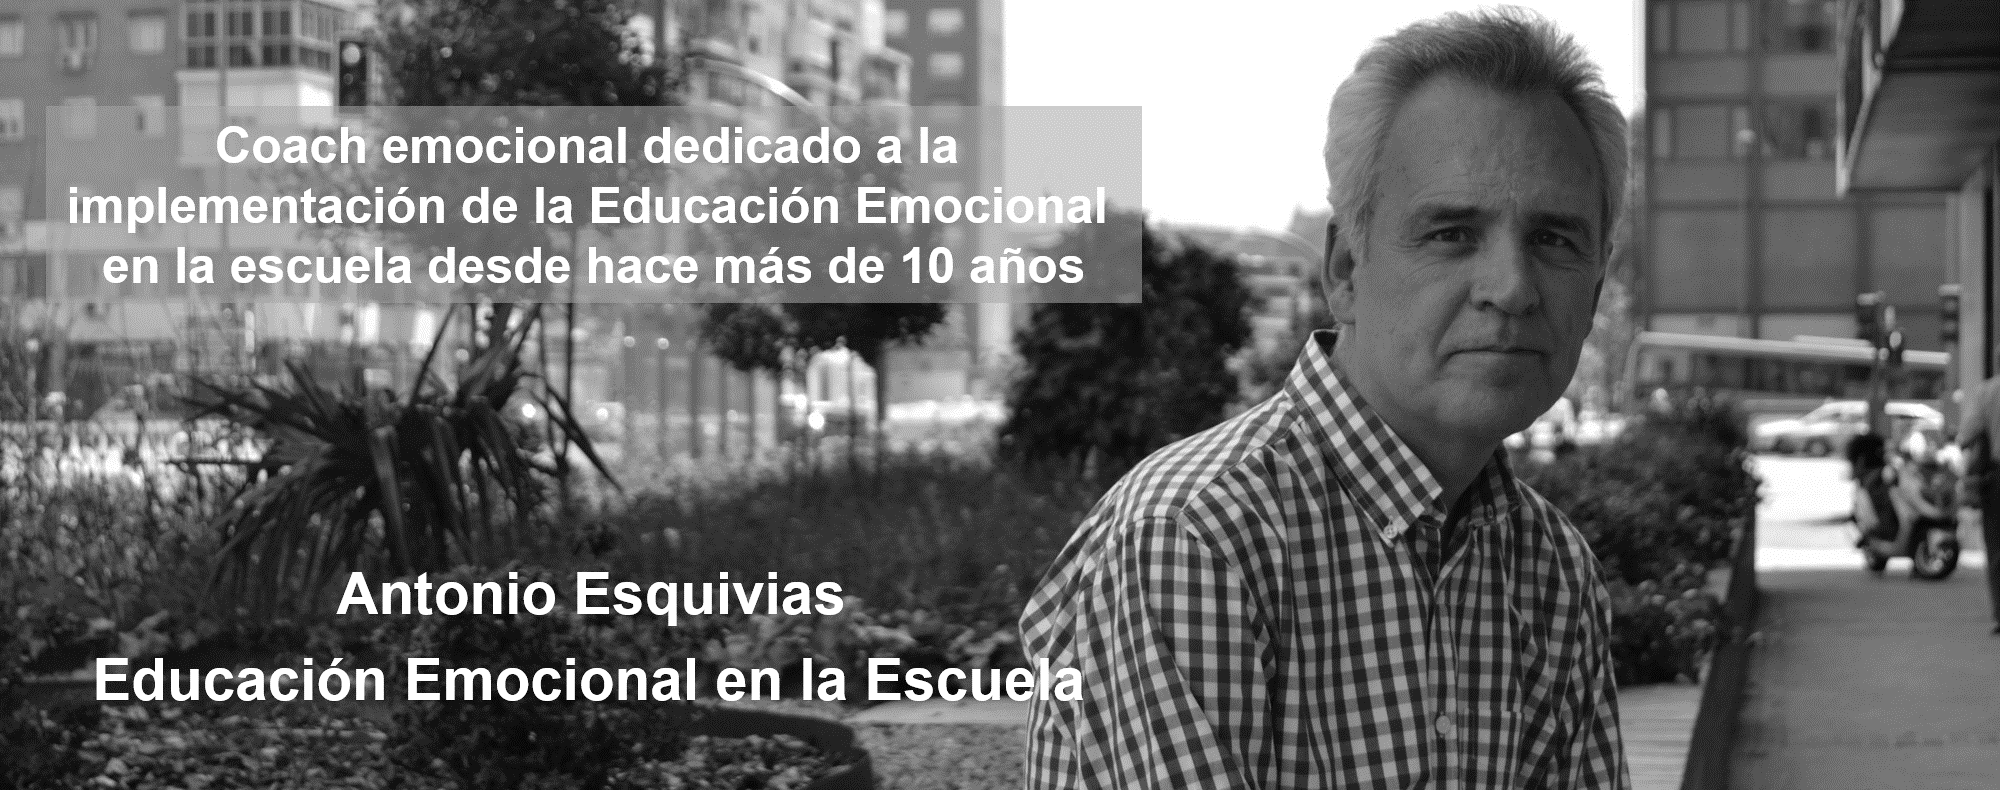 Antonio Esquivias coach emocional de Educación Emocional en la Escuela